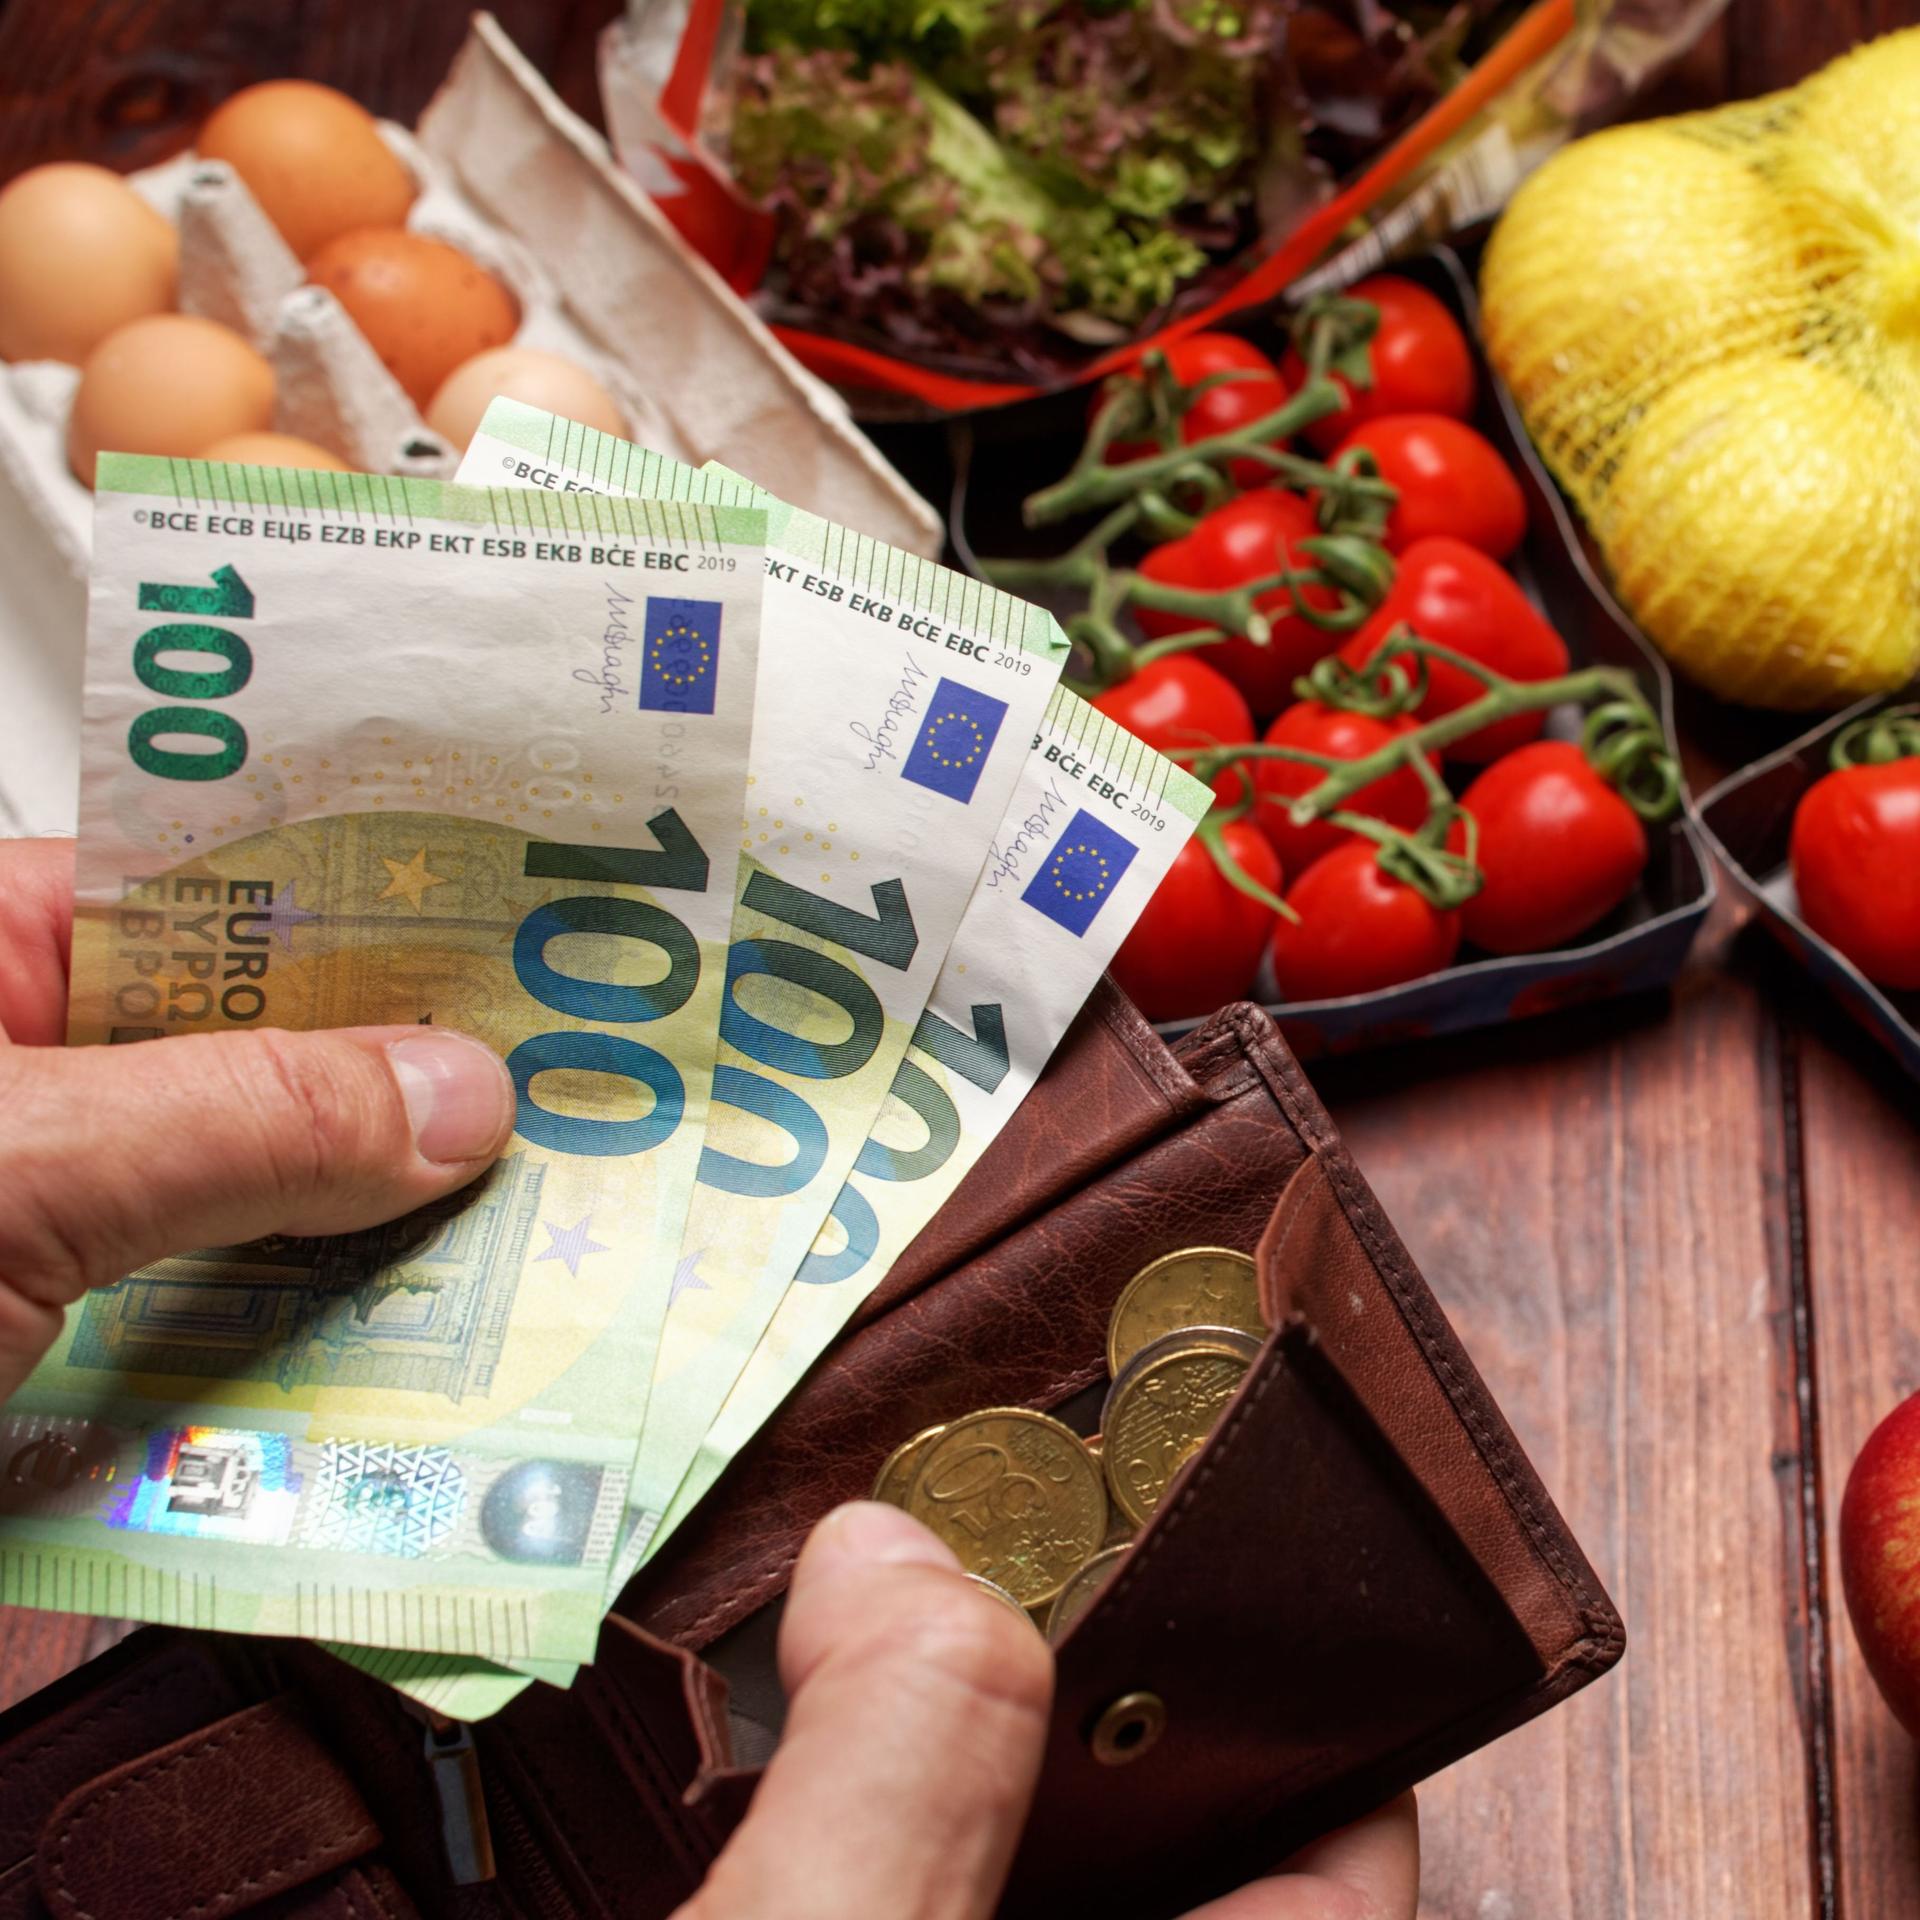 EIne Hand hält dre einhundert Euro-Scheine die andere Hand hält einen Geldbeutel im Hintergund liegt ein Einkauf mit Obst Gemüse und Eiern.